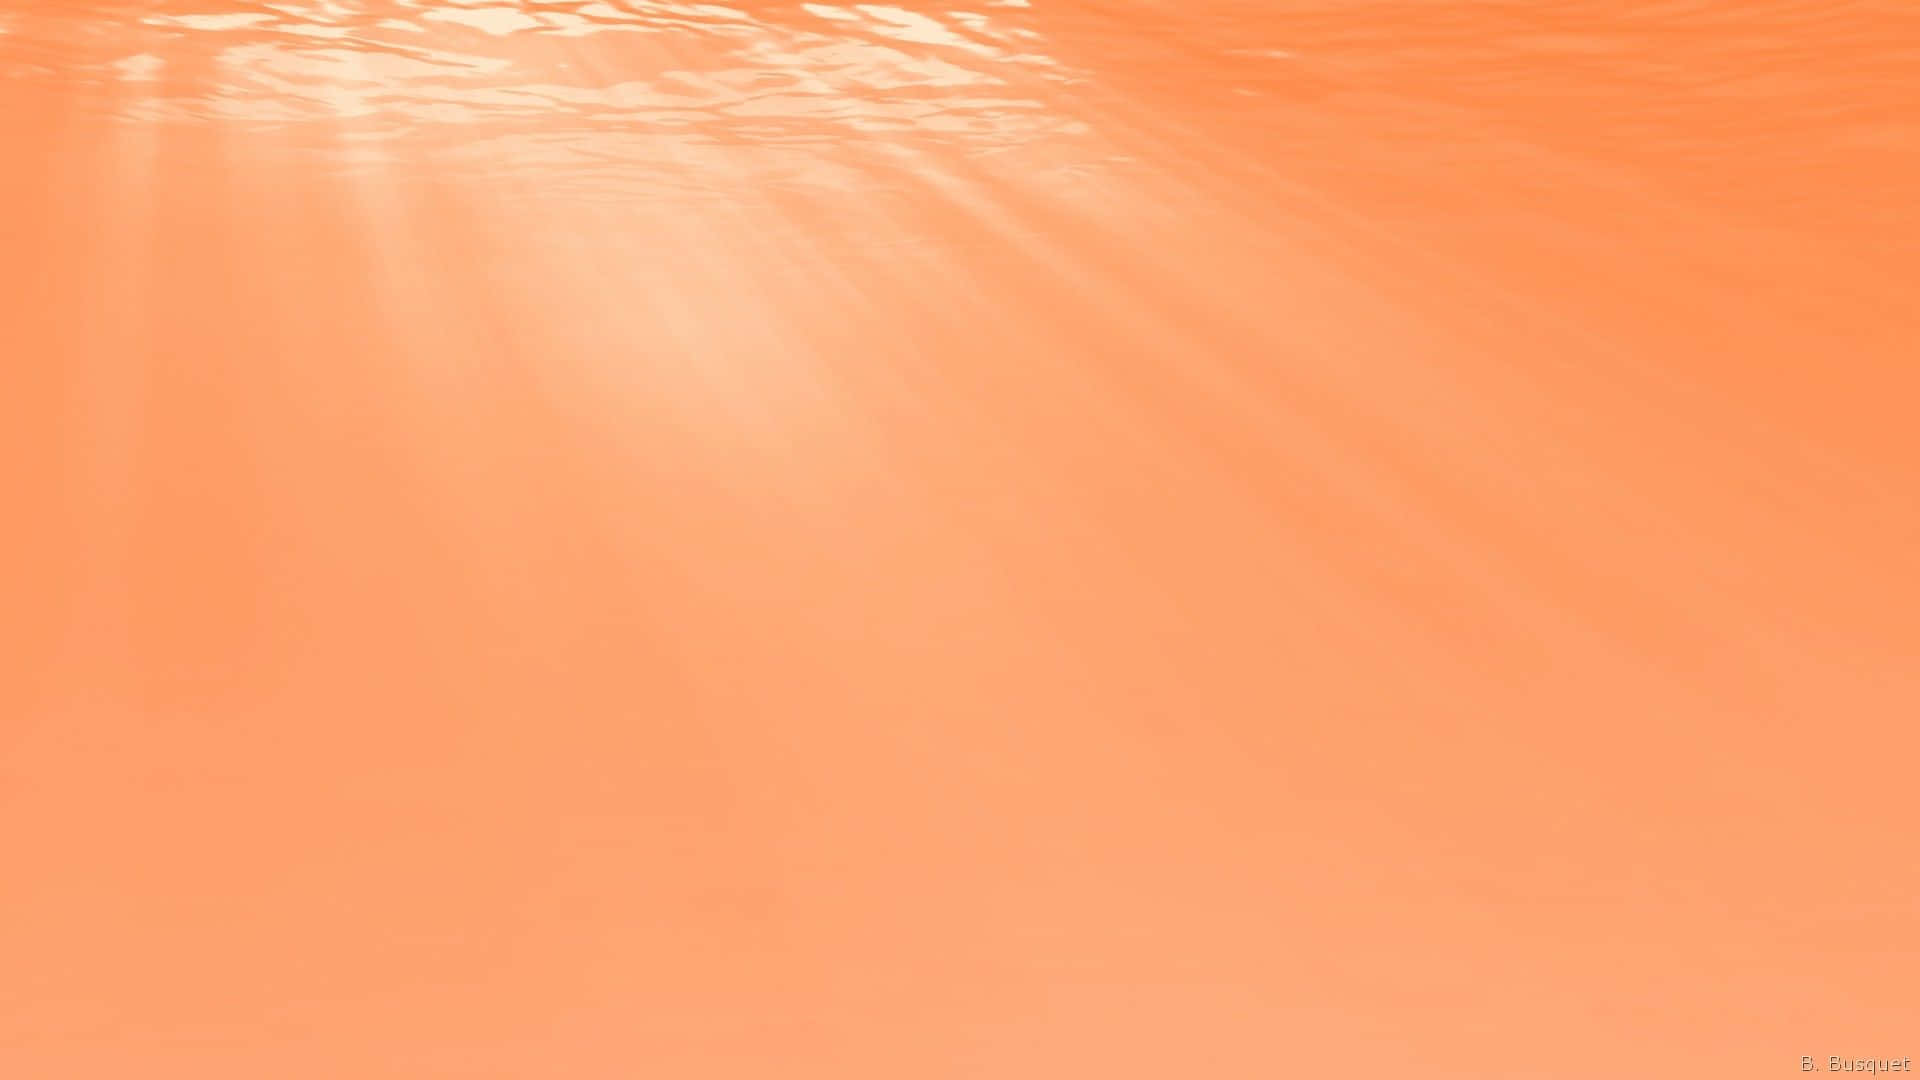 Erhellensie Ihren Tag Mit Einem Hellen Orangefarbenen Hintergrund.